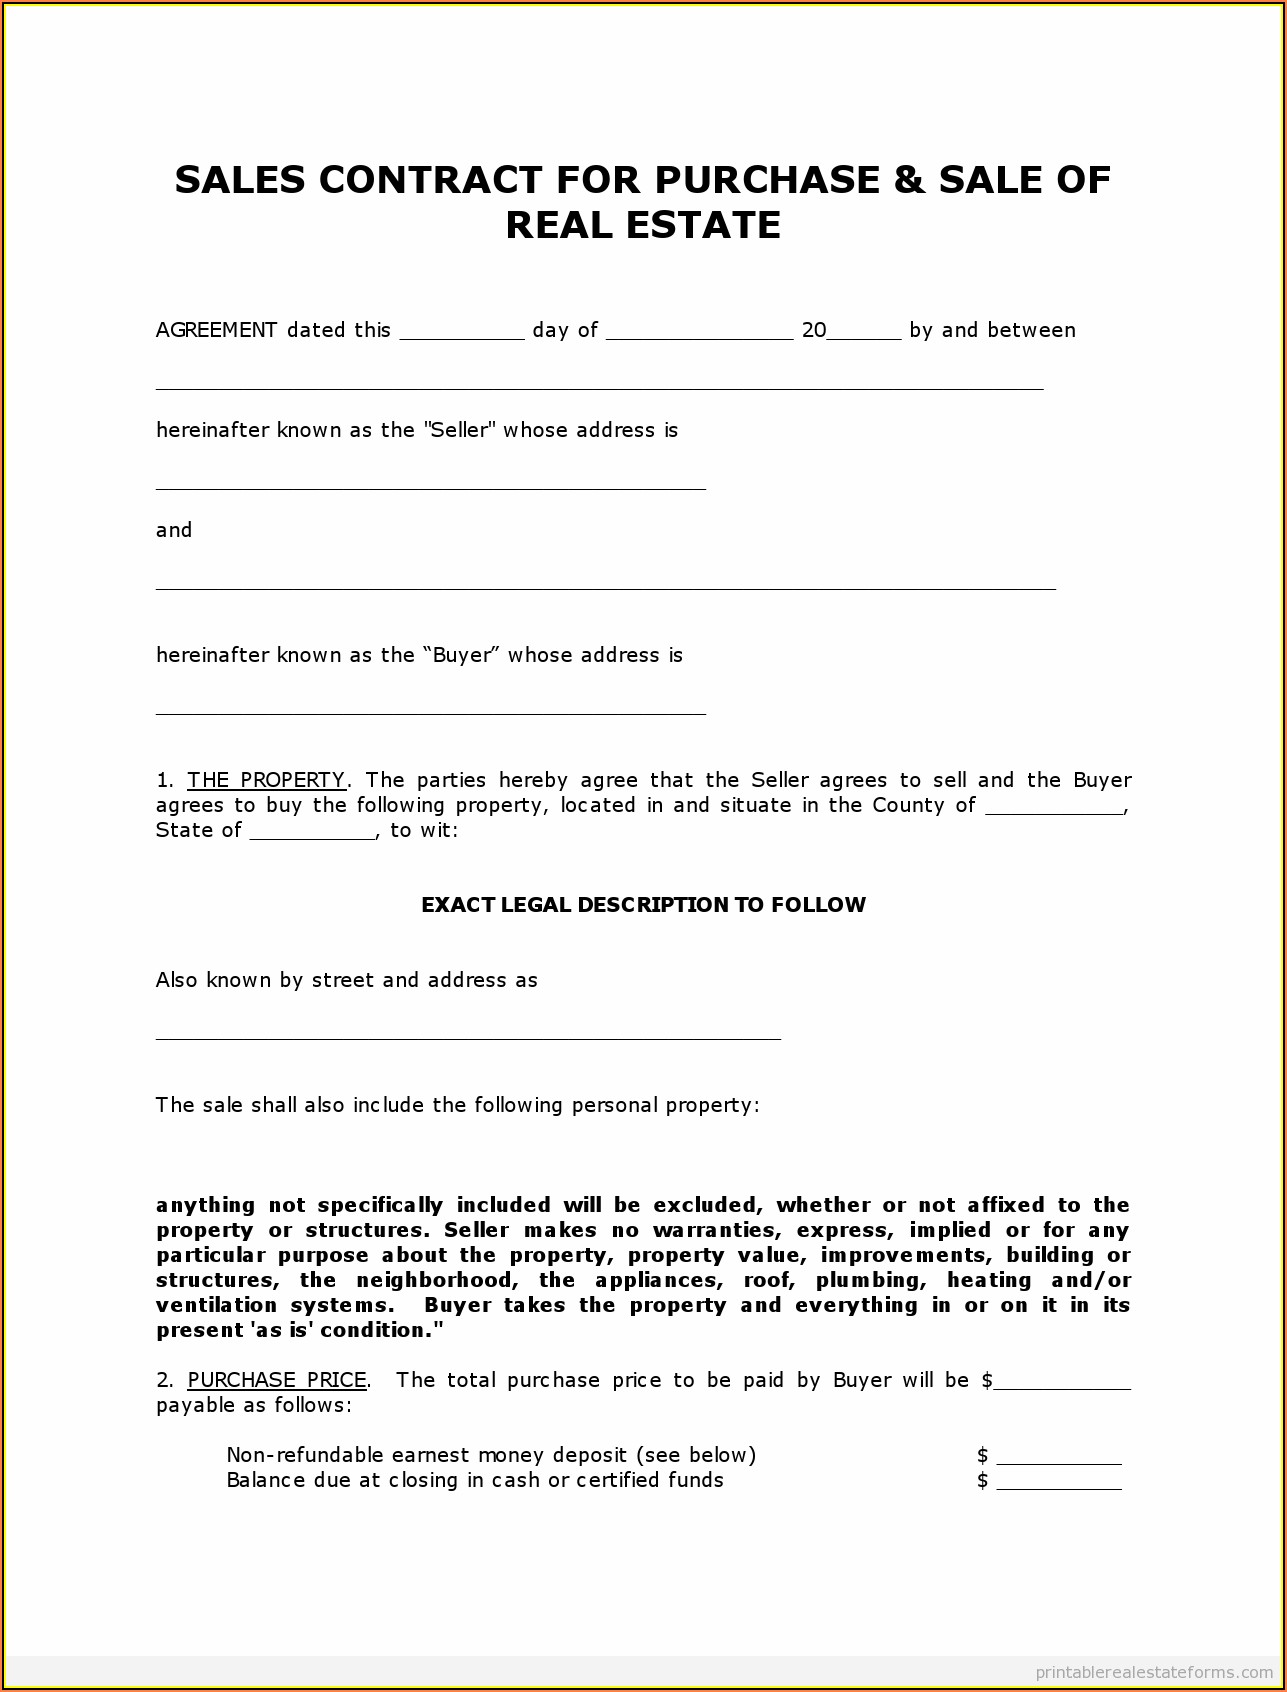 Land Contract Example Ohio